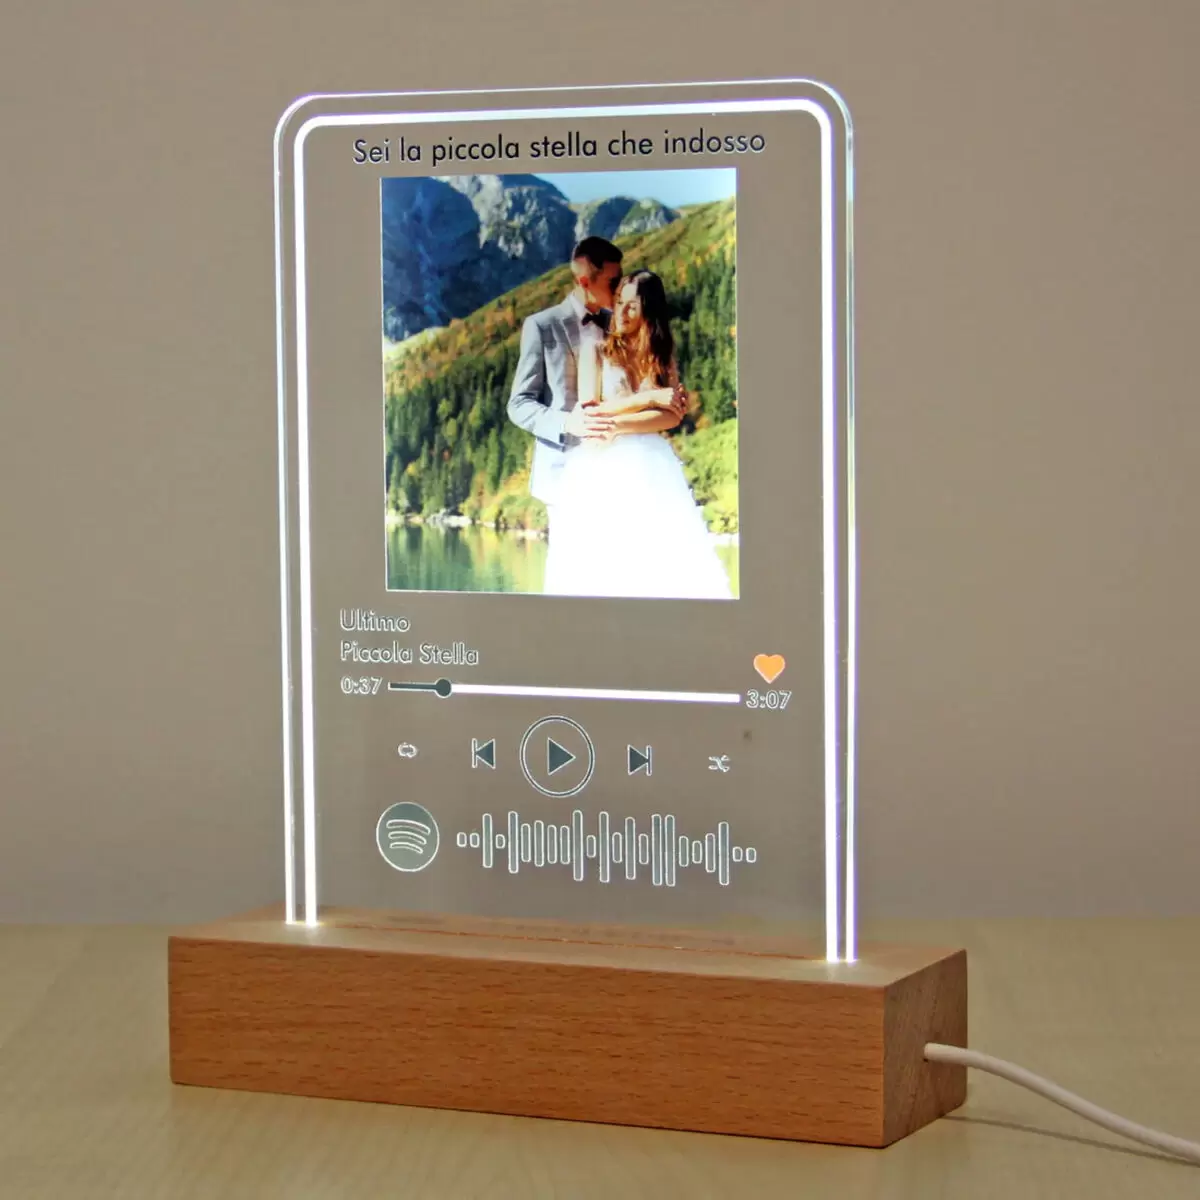 Lampada in plexiglass con canzone spotify